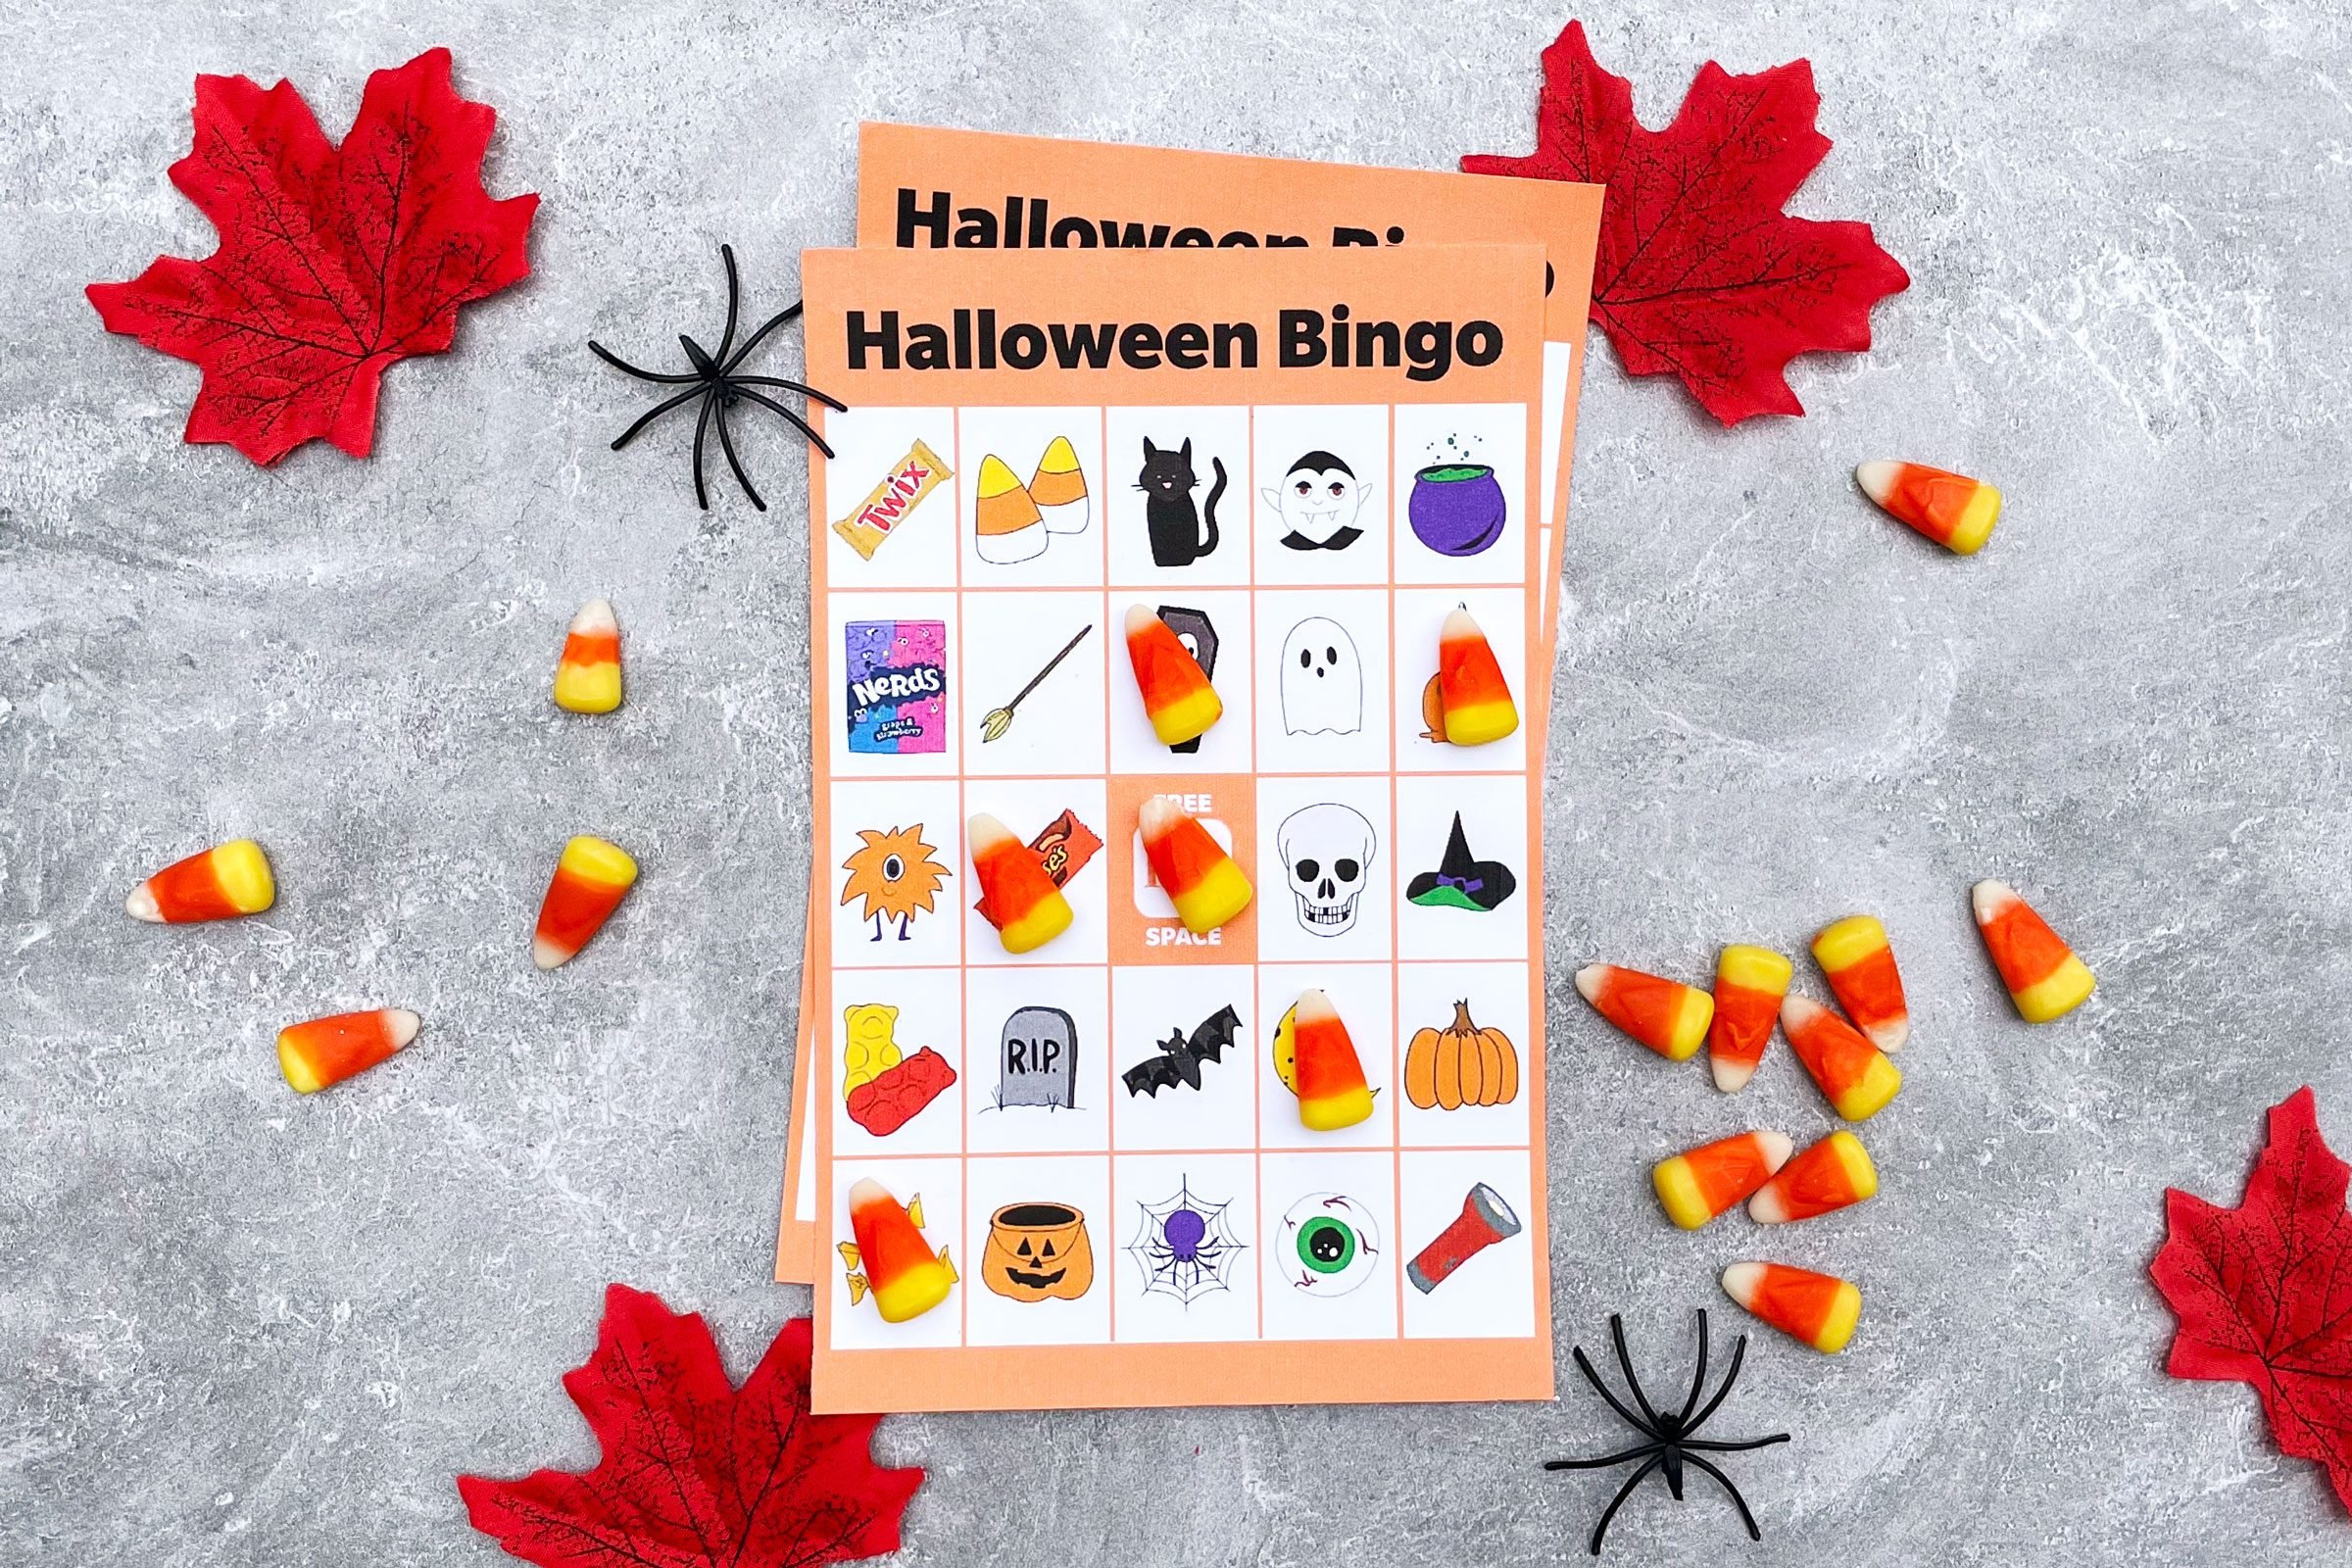 Cartones de bingo de Halloween para imprimir gratis [2021]